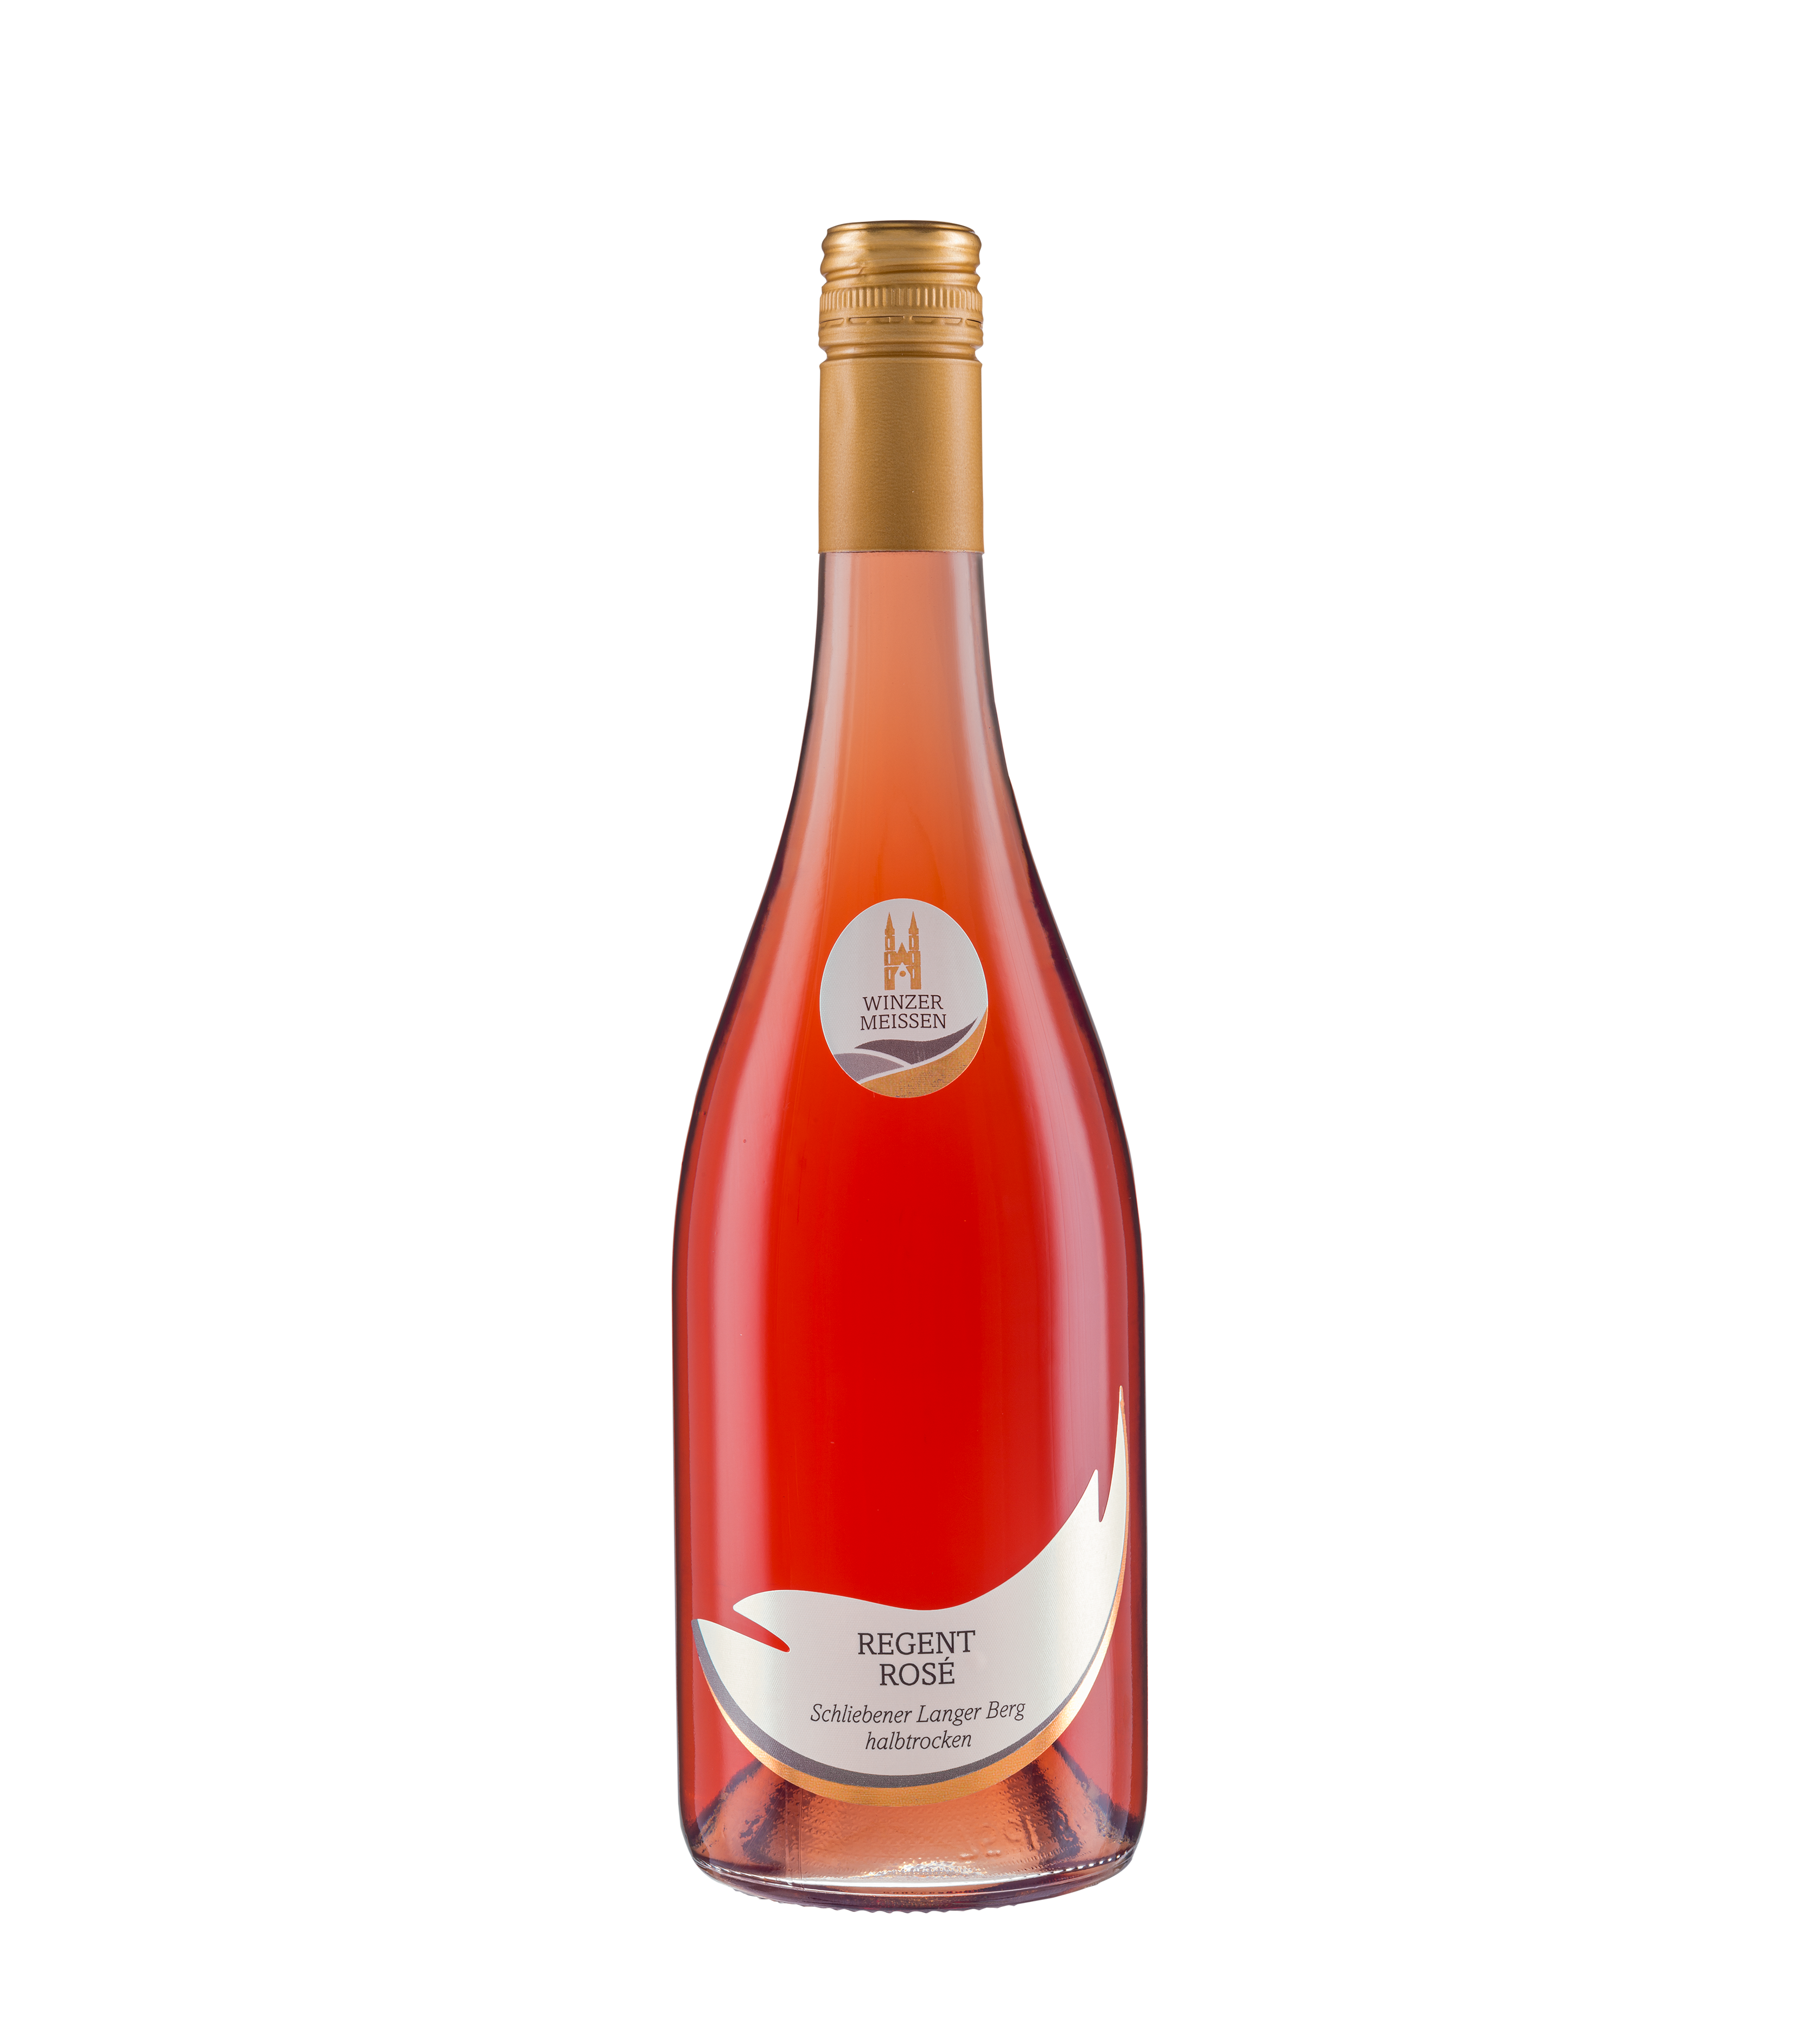 2021 Regent Rosé Qualitätswein Schliebener Langer Berg halbtrocken